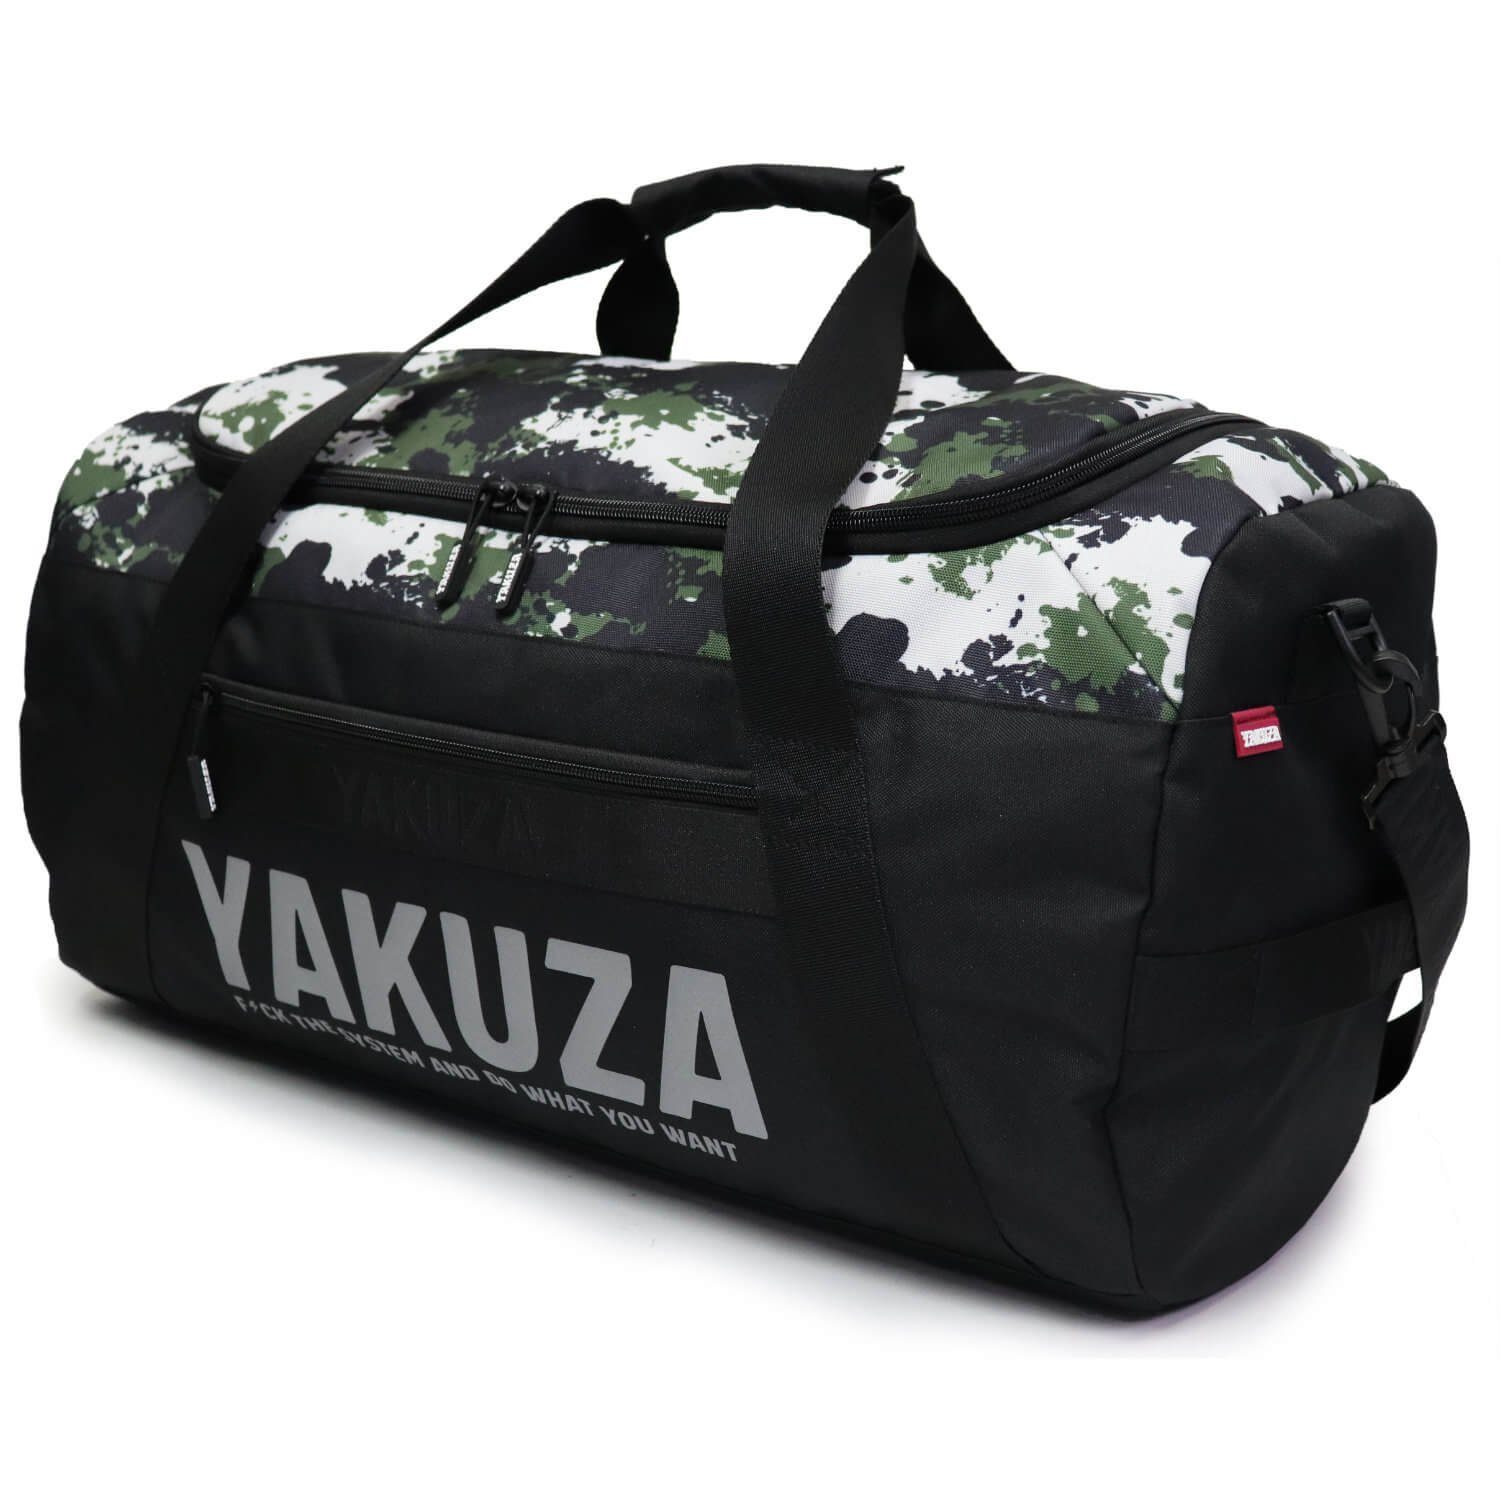 Hauptfach geräumigem Tweak YAKUZA mit schwarz/camouflage, Sporttasche Weekender YAKUZA Sporttasche